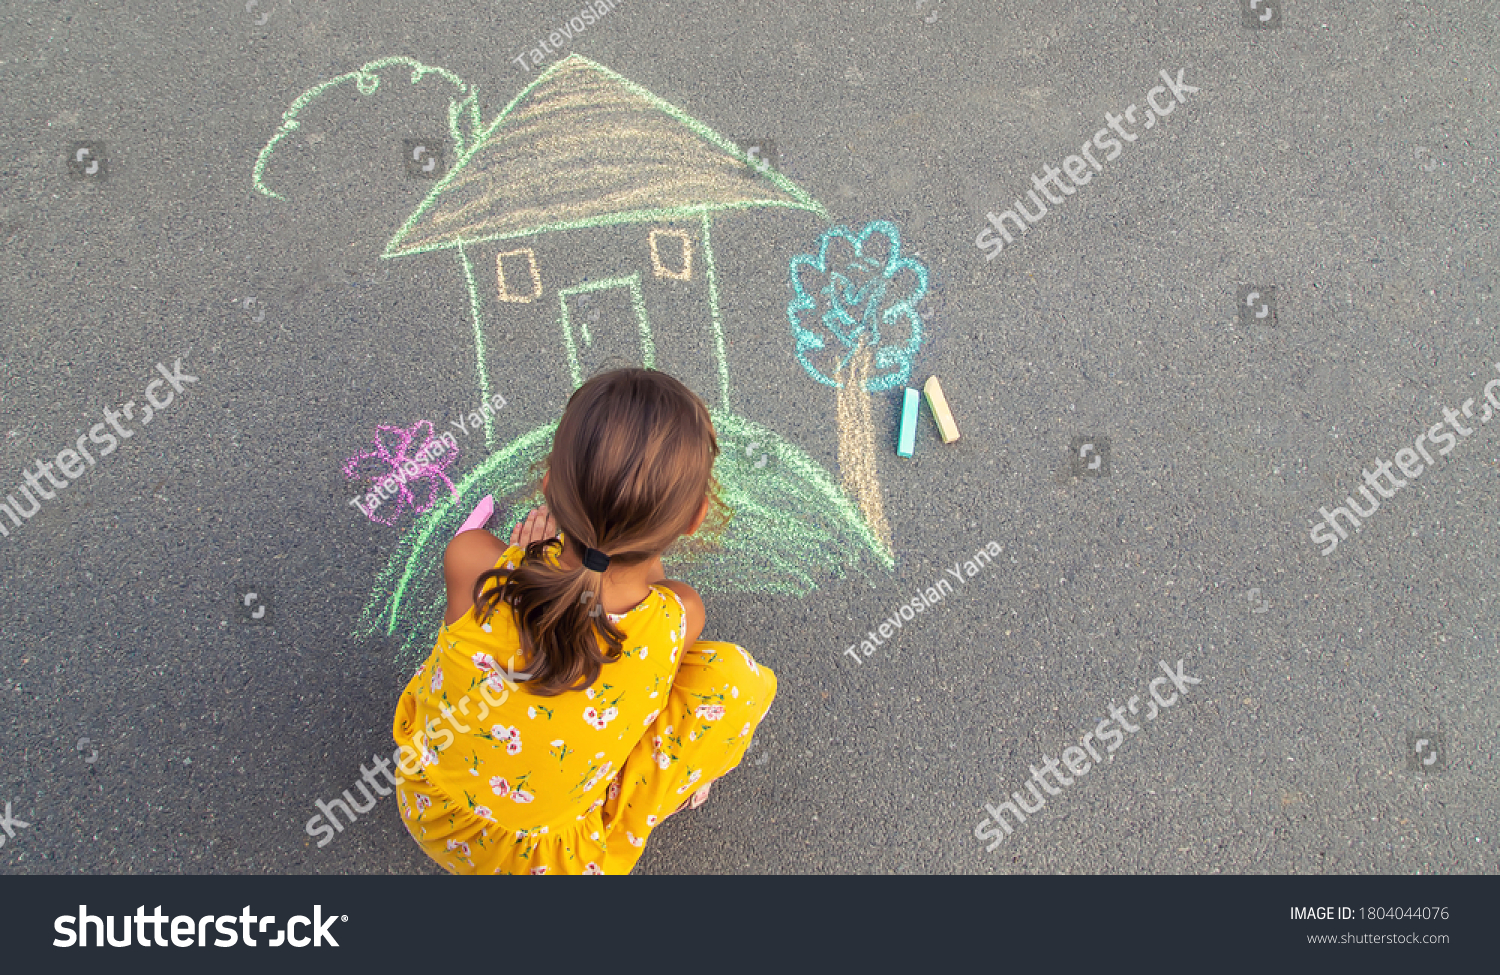 The child draws a house on the asphalt. Selective focus. kid. #1804044076